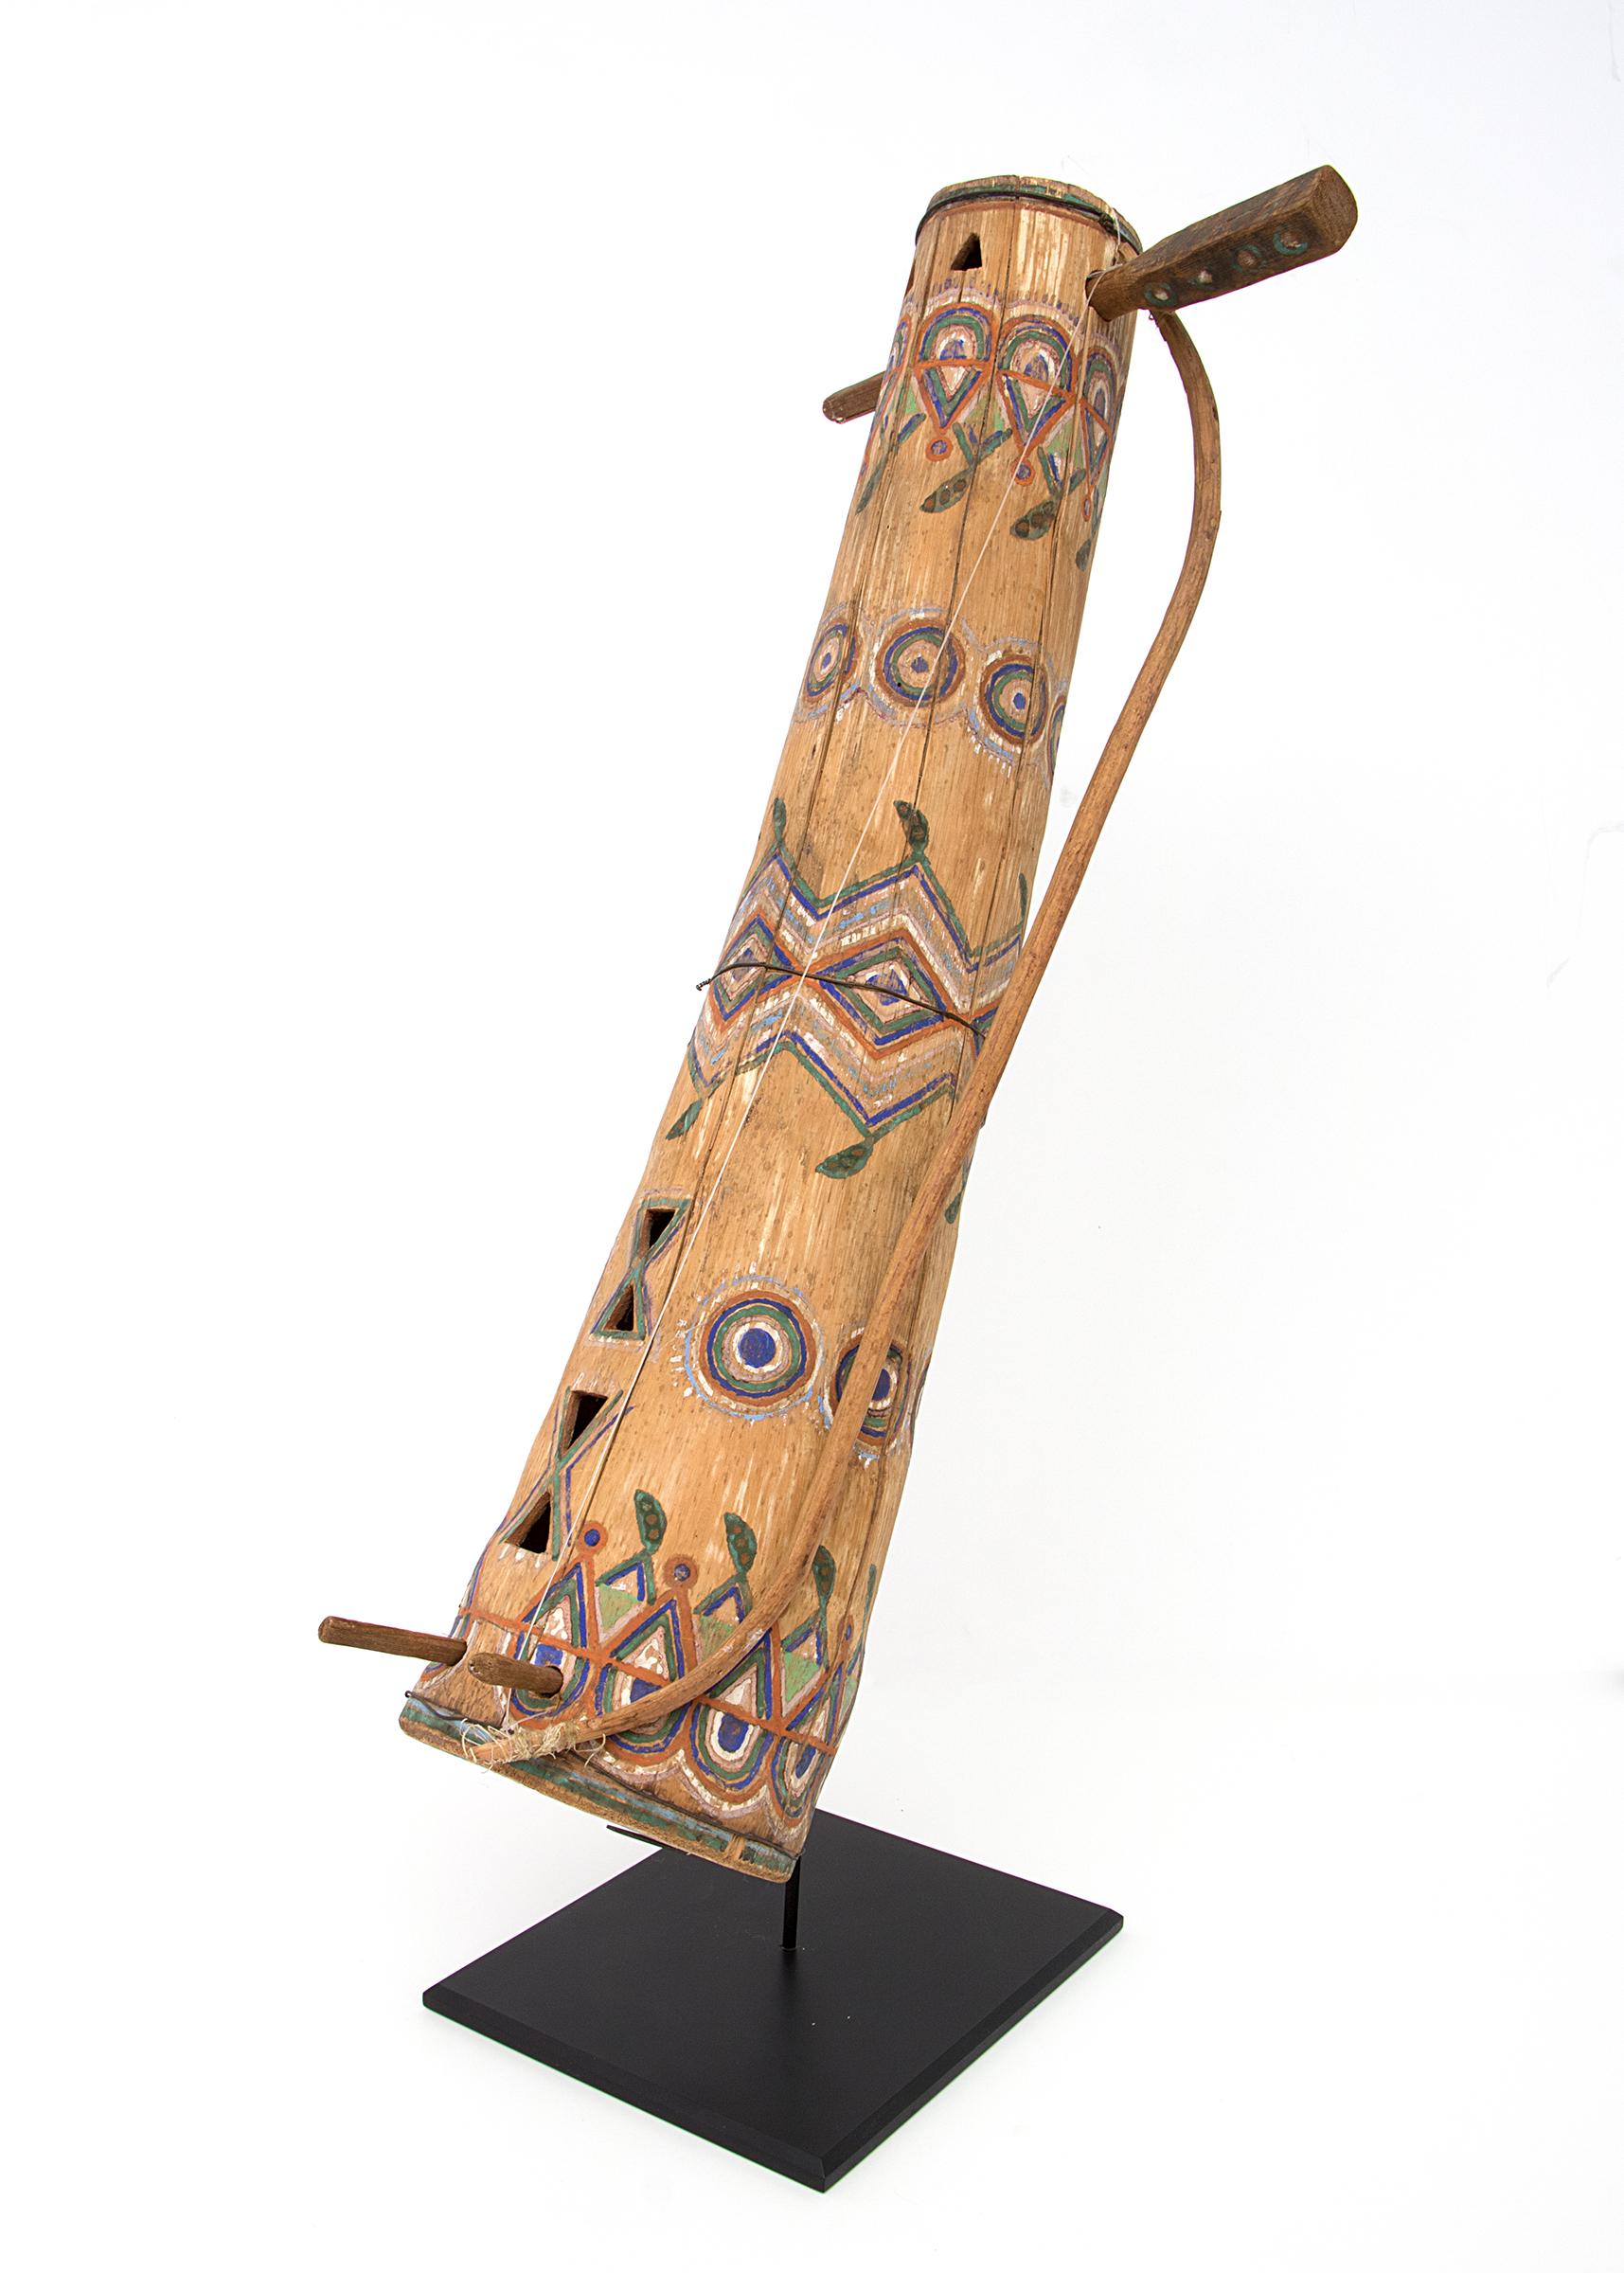 Individueller Display-Ständer ist im Lieferumfang enthalten.

Dieses Stück wurde von dem bekannten Apachen-Künstler Amos Gustina (1858-1945) geschaffen. Diese tsii'edo'a'tl (Apache für 